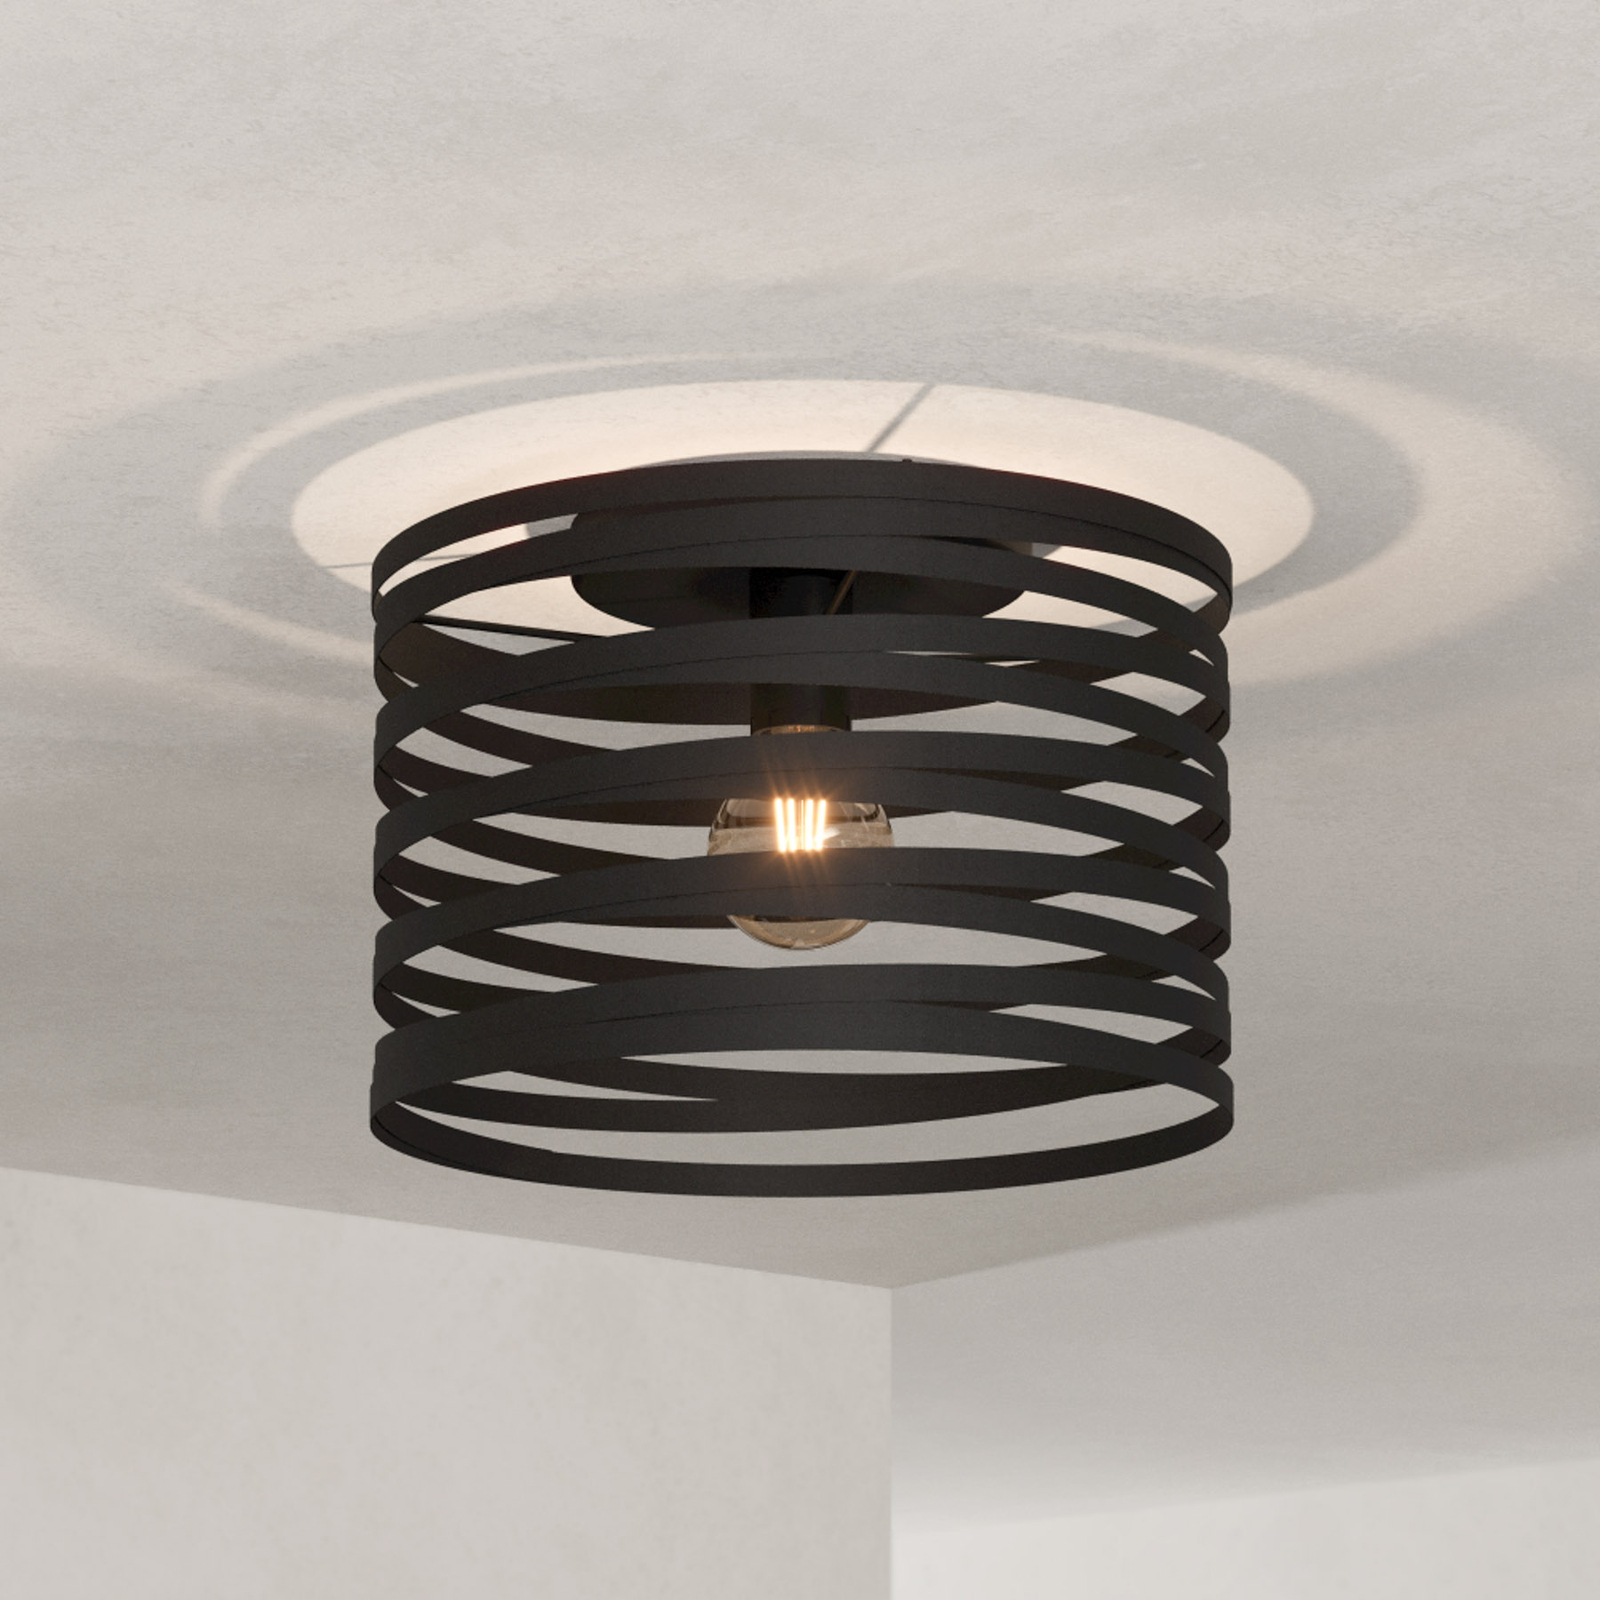 Cremella ceiling light, ring design, black